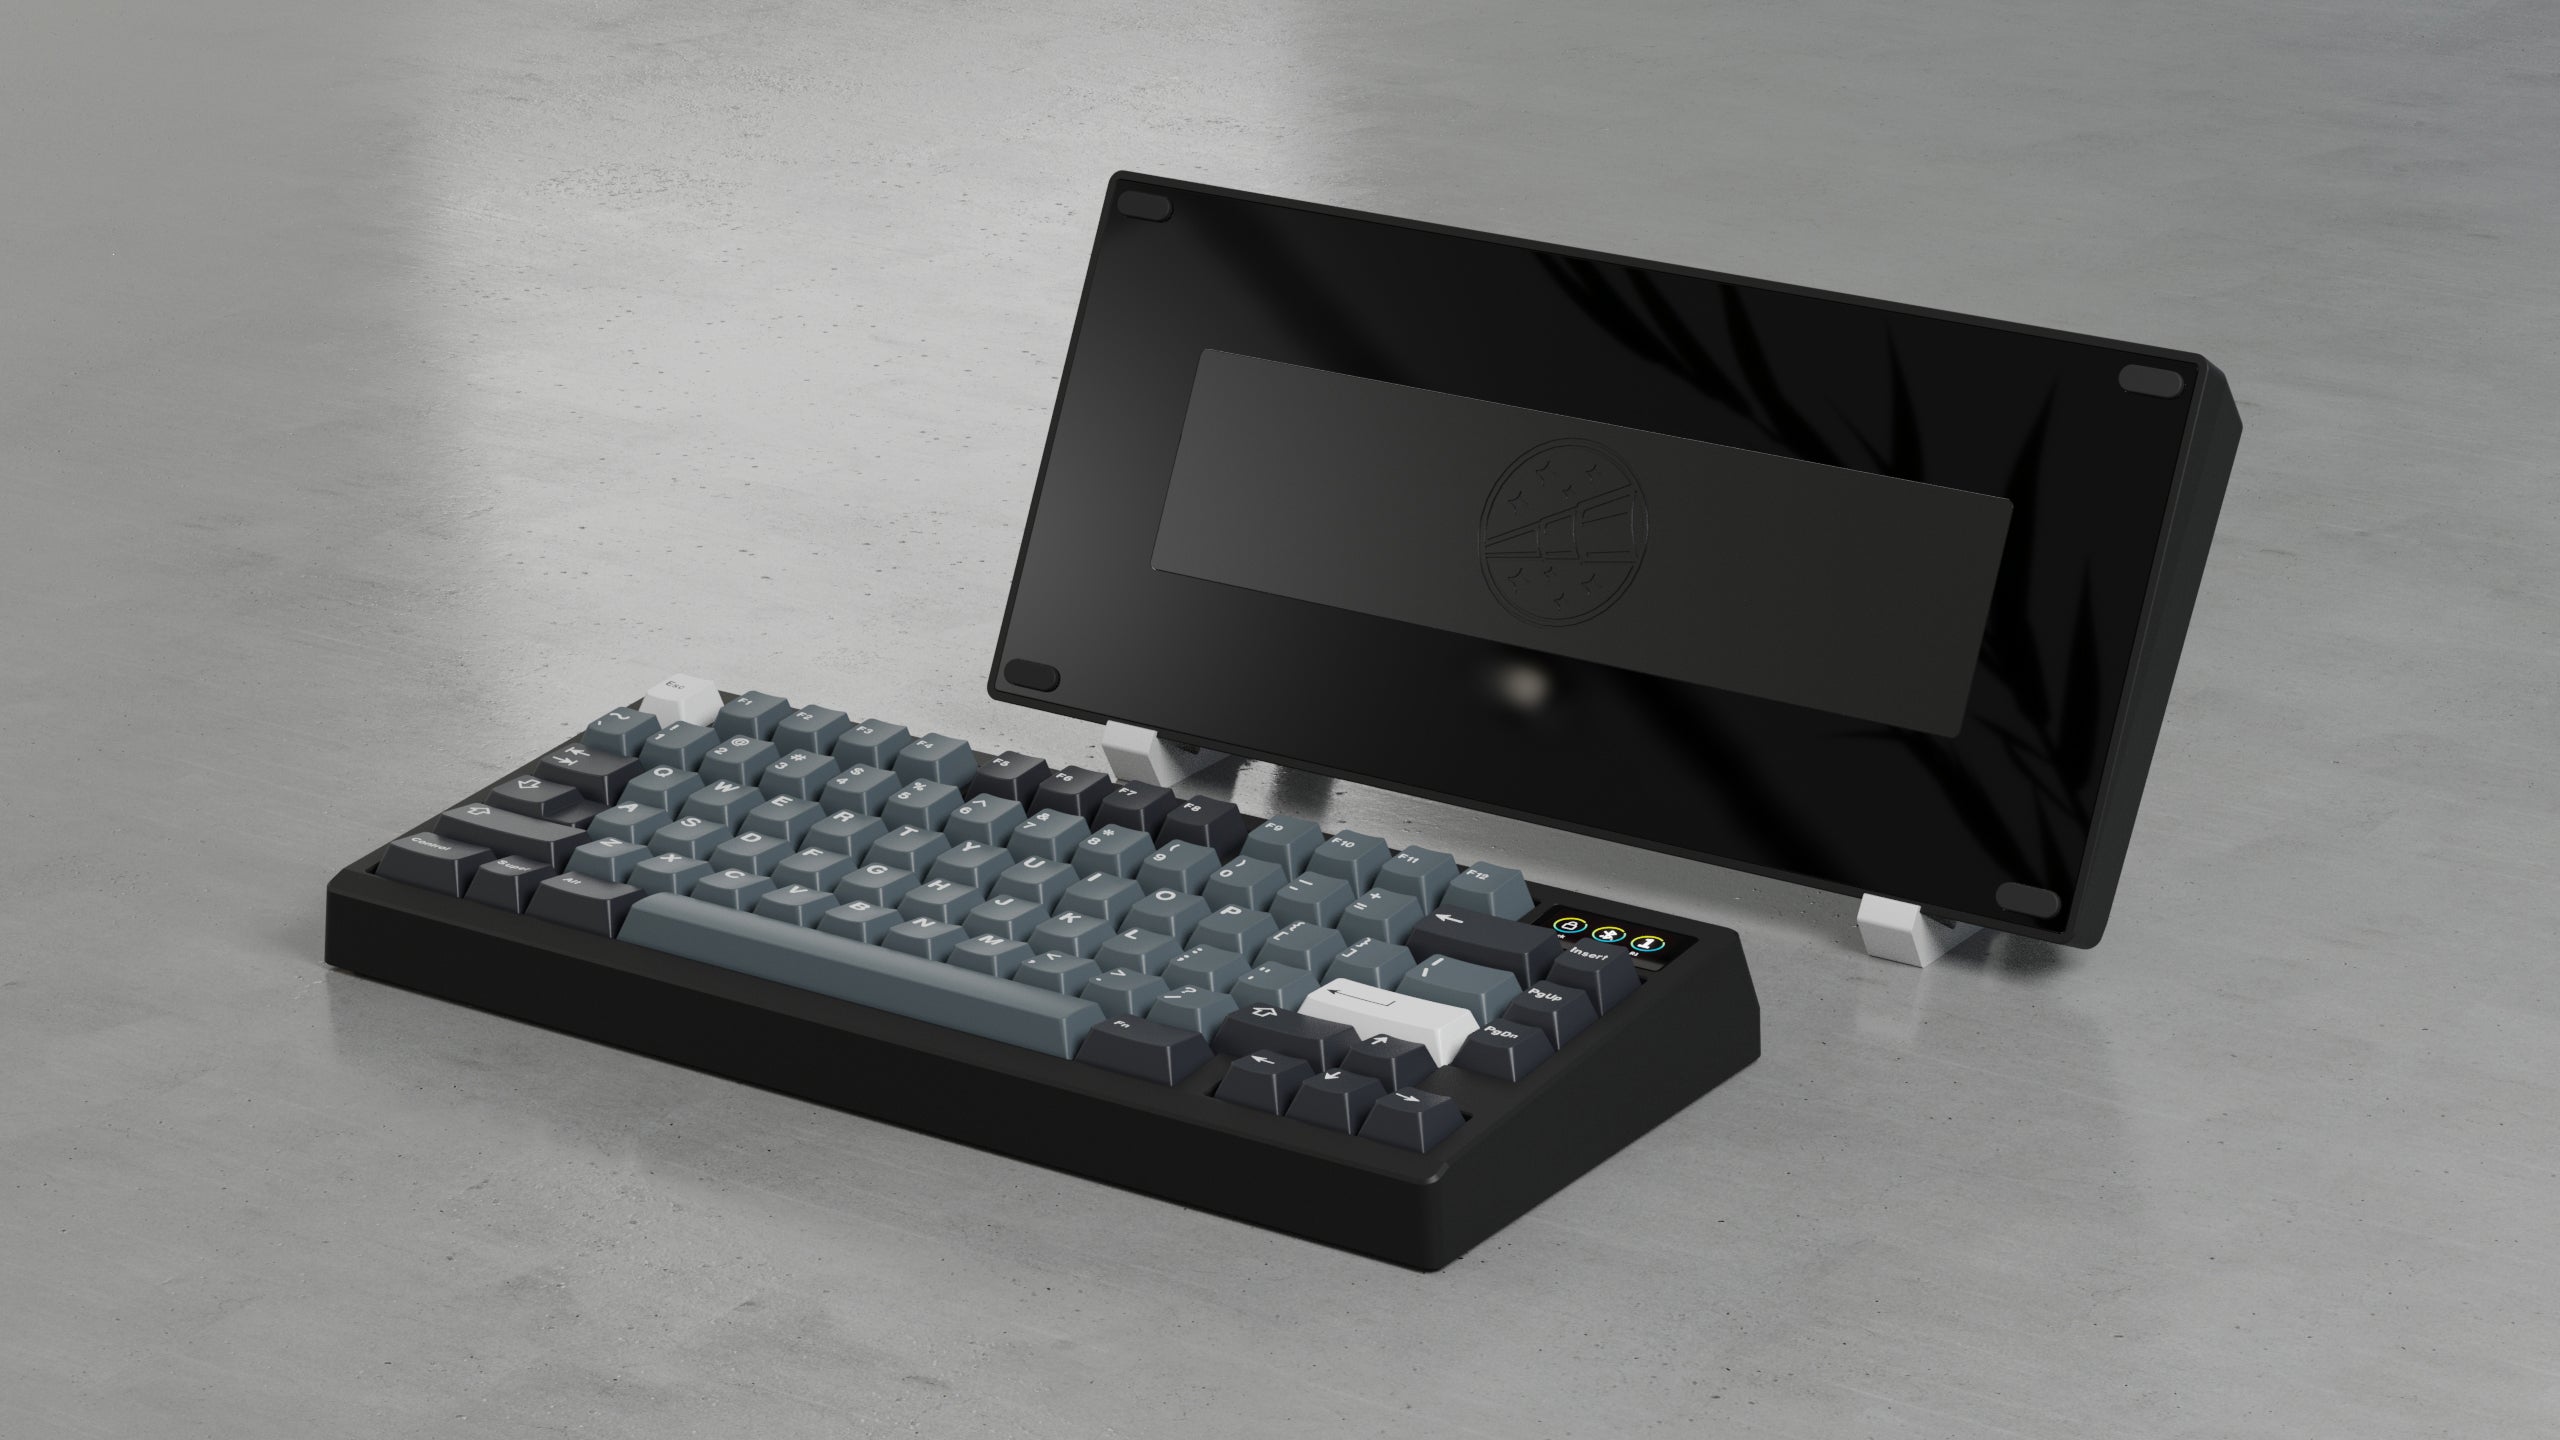 Zoom75 EE Keyboard - Black [Preorder]